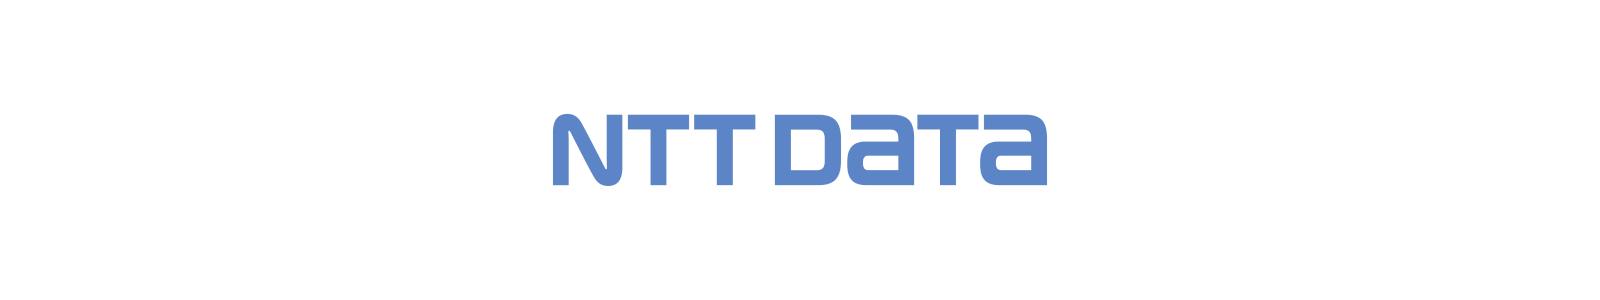 NTTデータ ロゴ